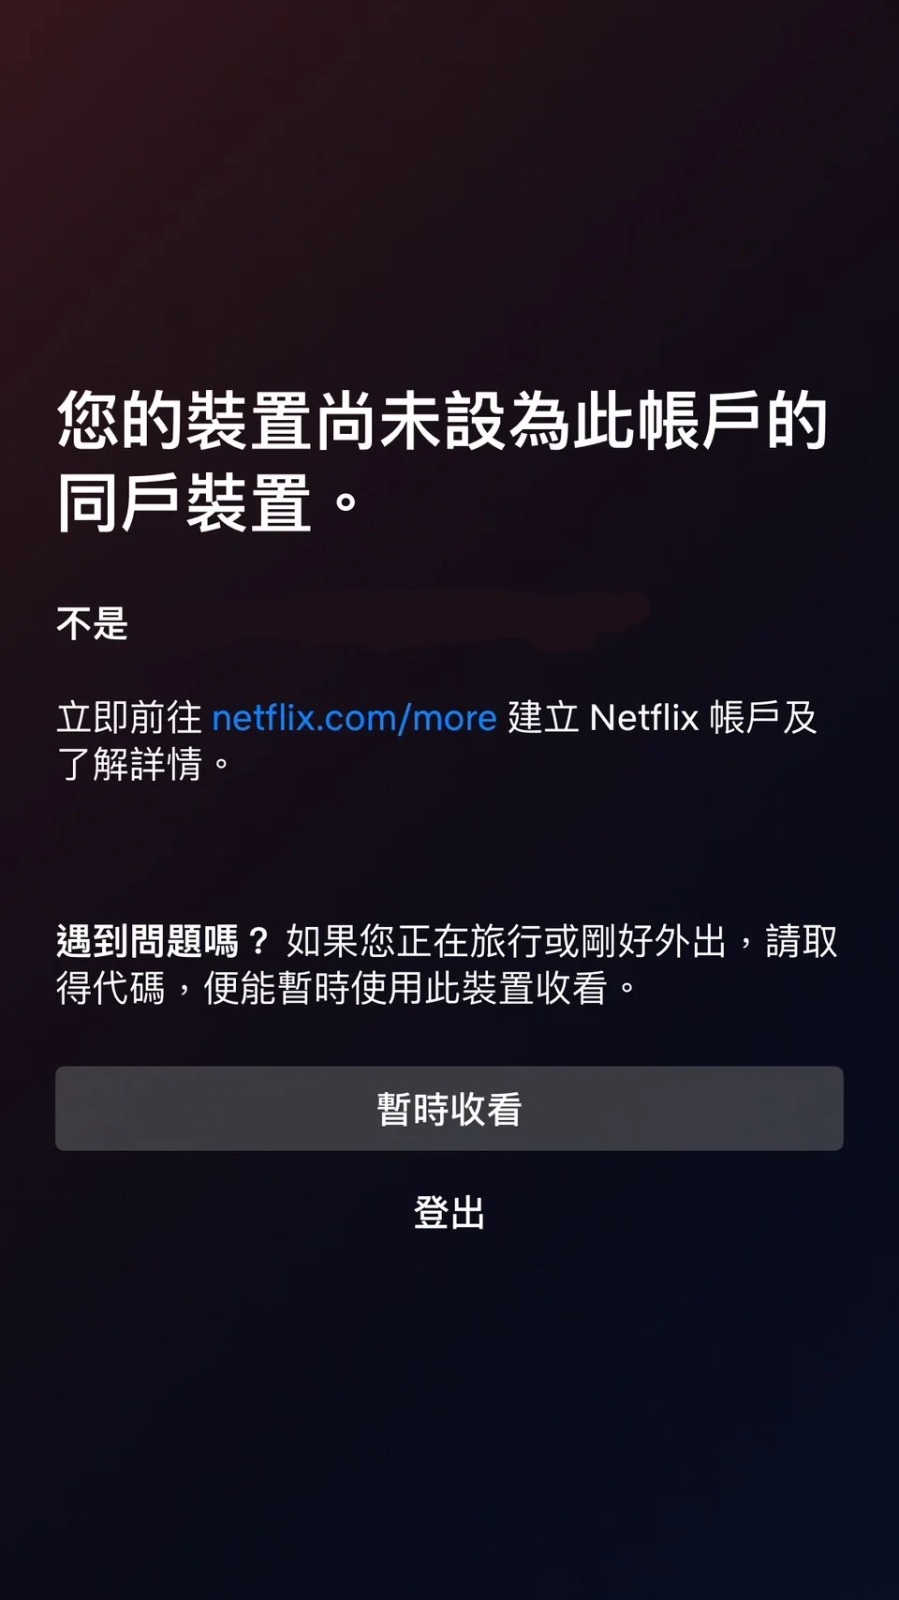 近日香港及台湾网民发现，Netflix突然无法观看，并弹出「您的装置尚未设为此帐户的同户装置」通知，并且要求设定为同户装置。用户仅能选择取得代码暂时收看或是登出。